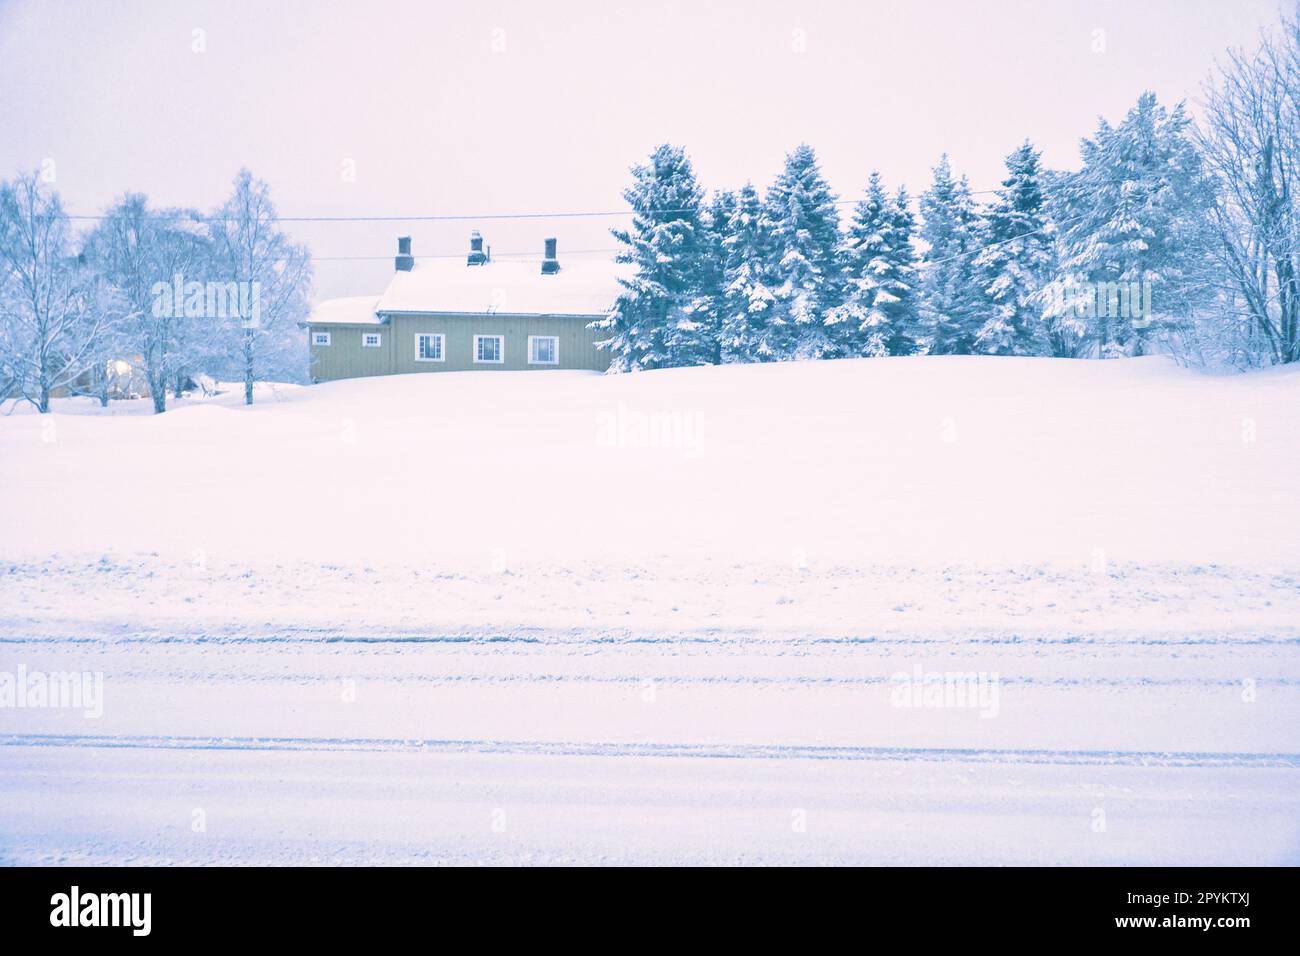 Paesaggio invernale in Scandinavia. Strada innevata con alberi coperti di neve e una casa. Foto del paesaggio da nord Foto Stock